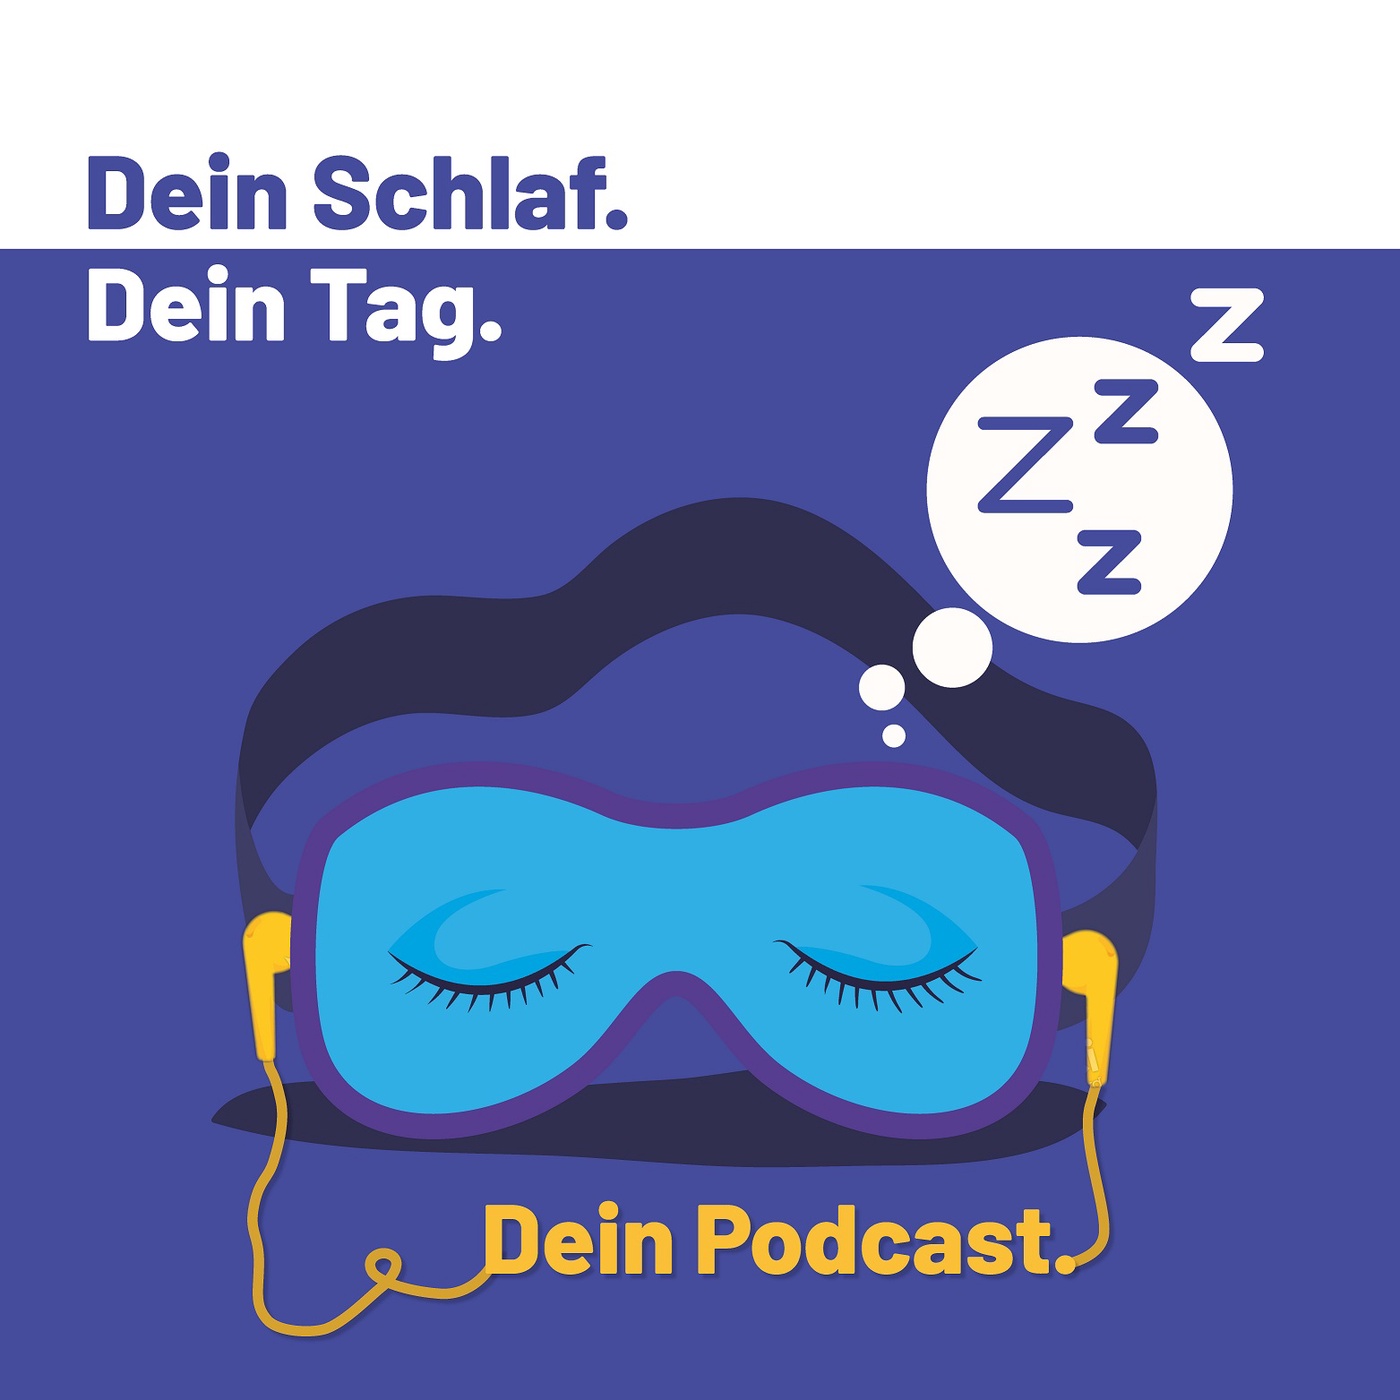 Dein Schlaf. Dein Tag. Dein Podcast.